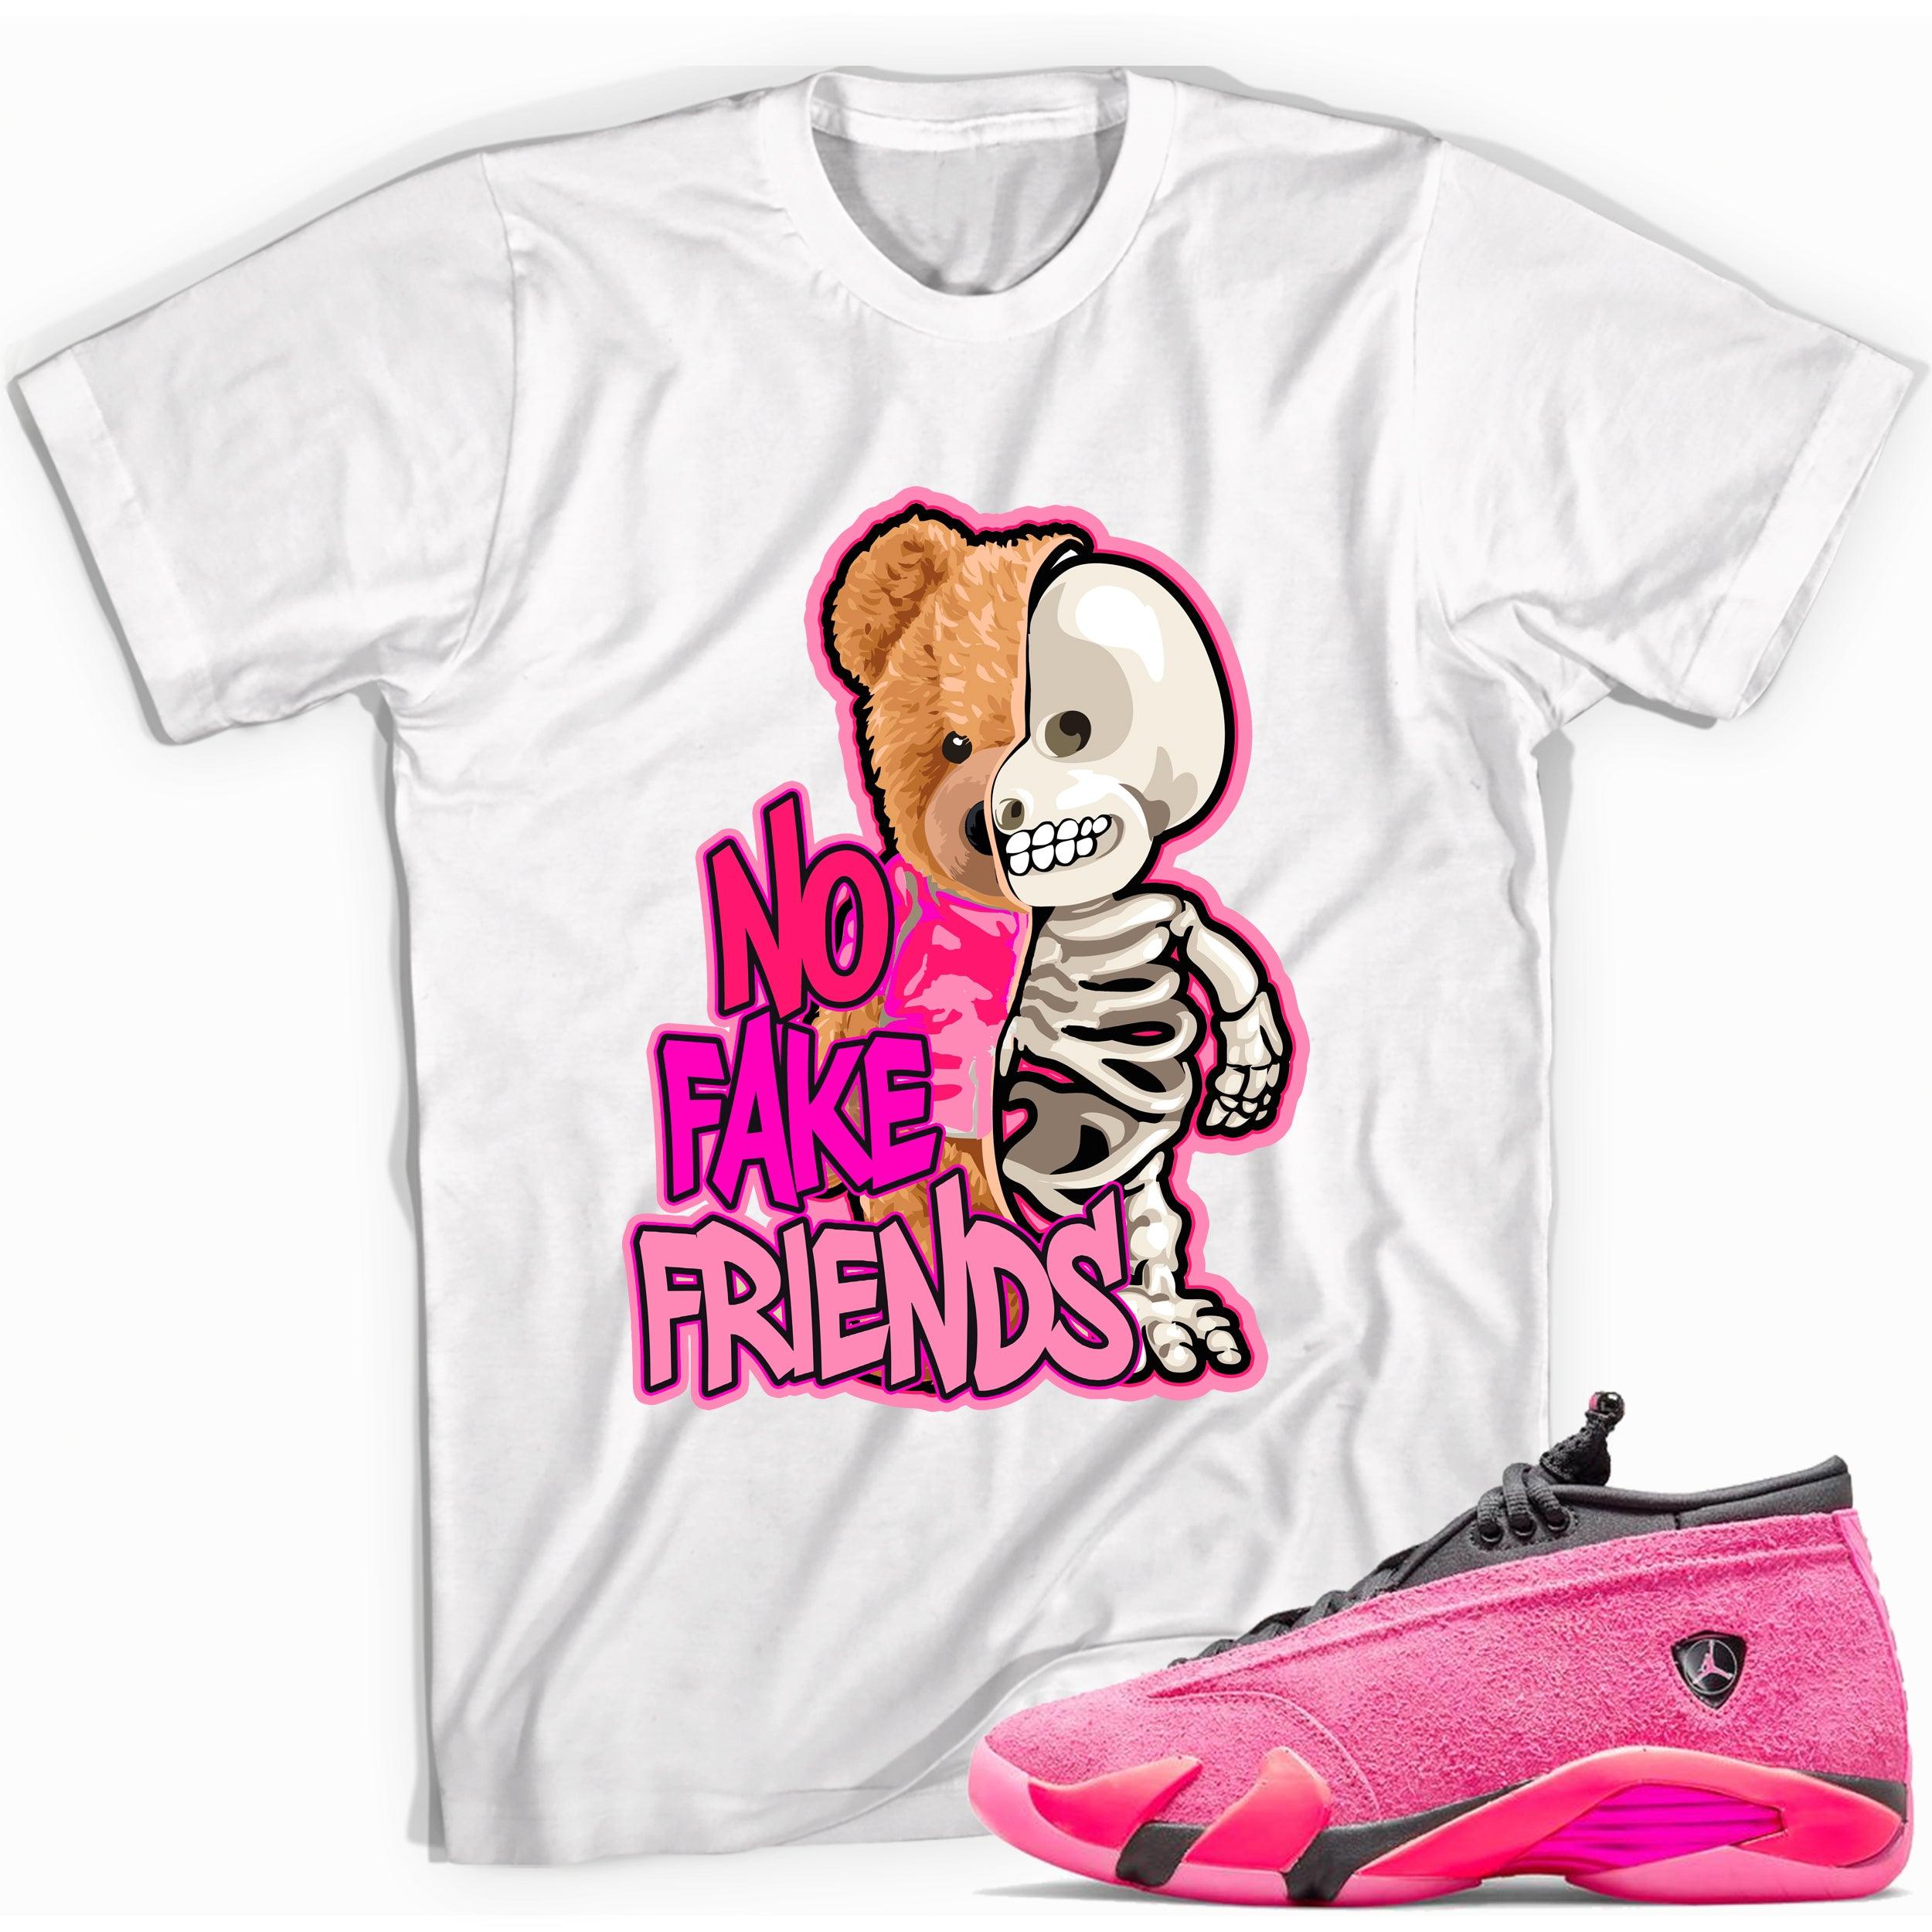 No Fake Friends Shirt Jordan 14s Low Shocking Pink photo